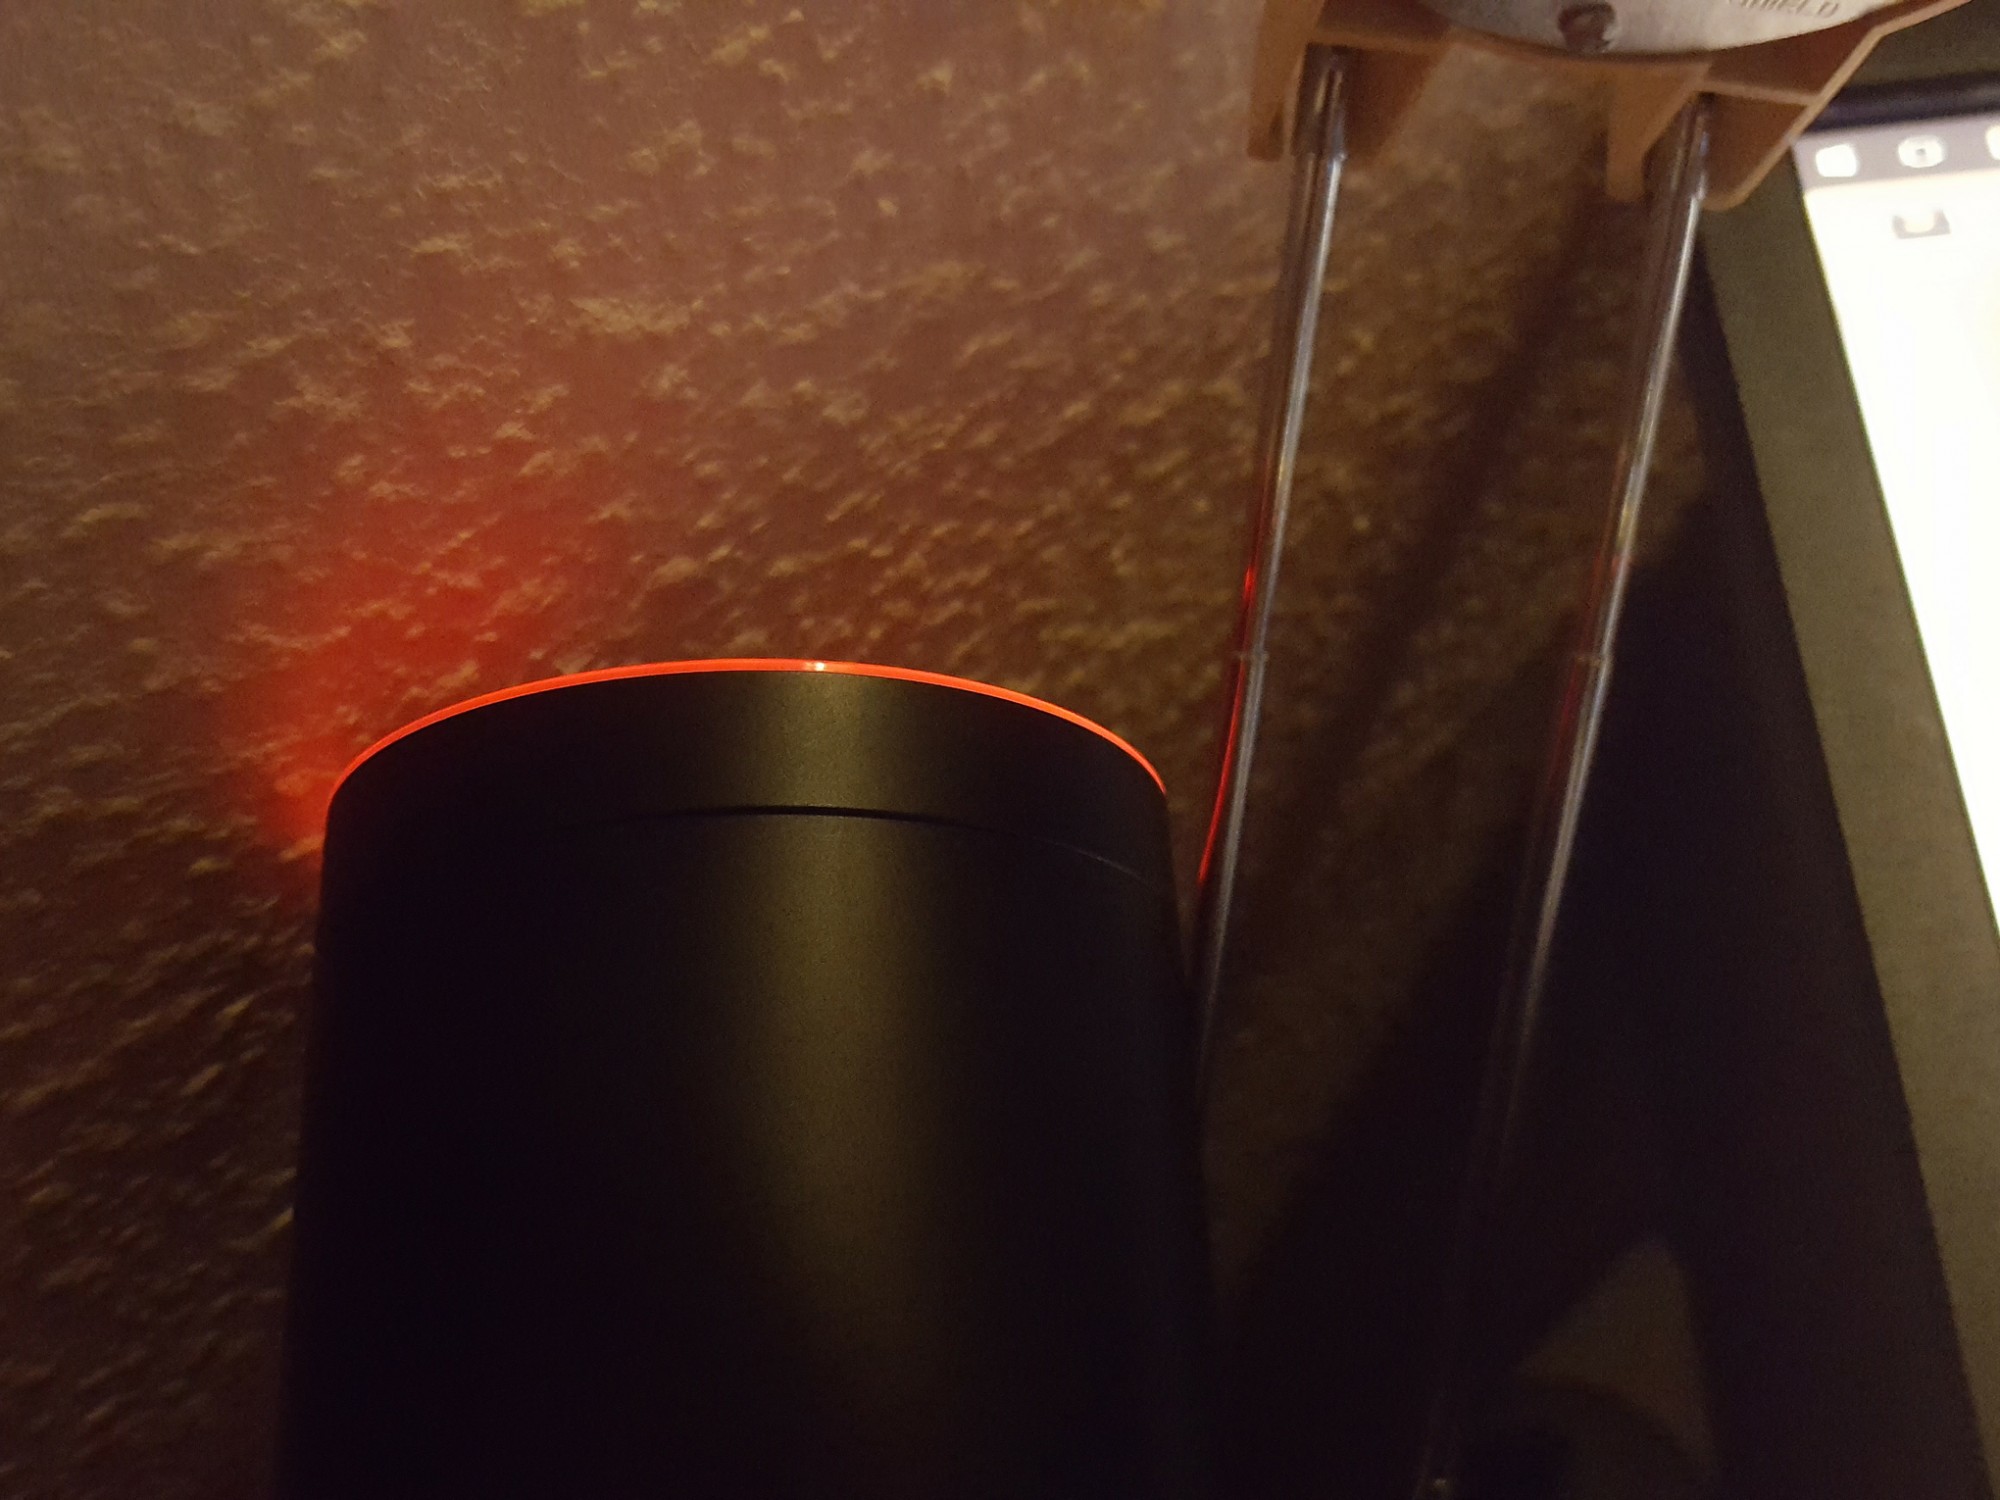 Amazon Echo Muted